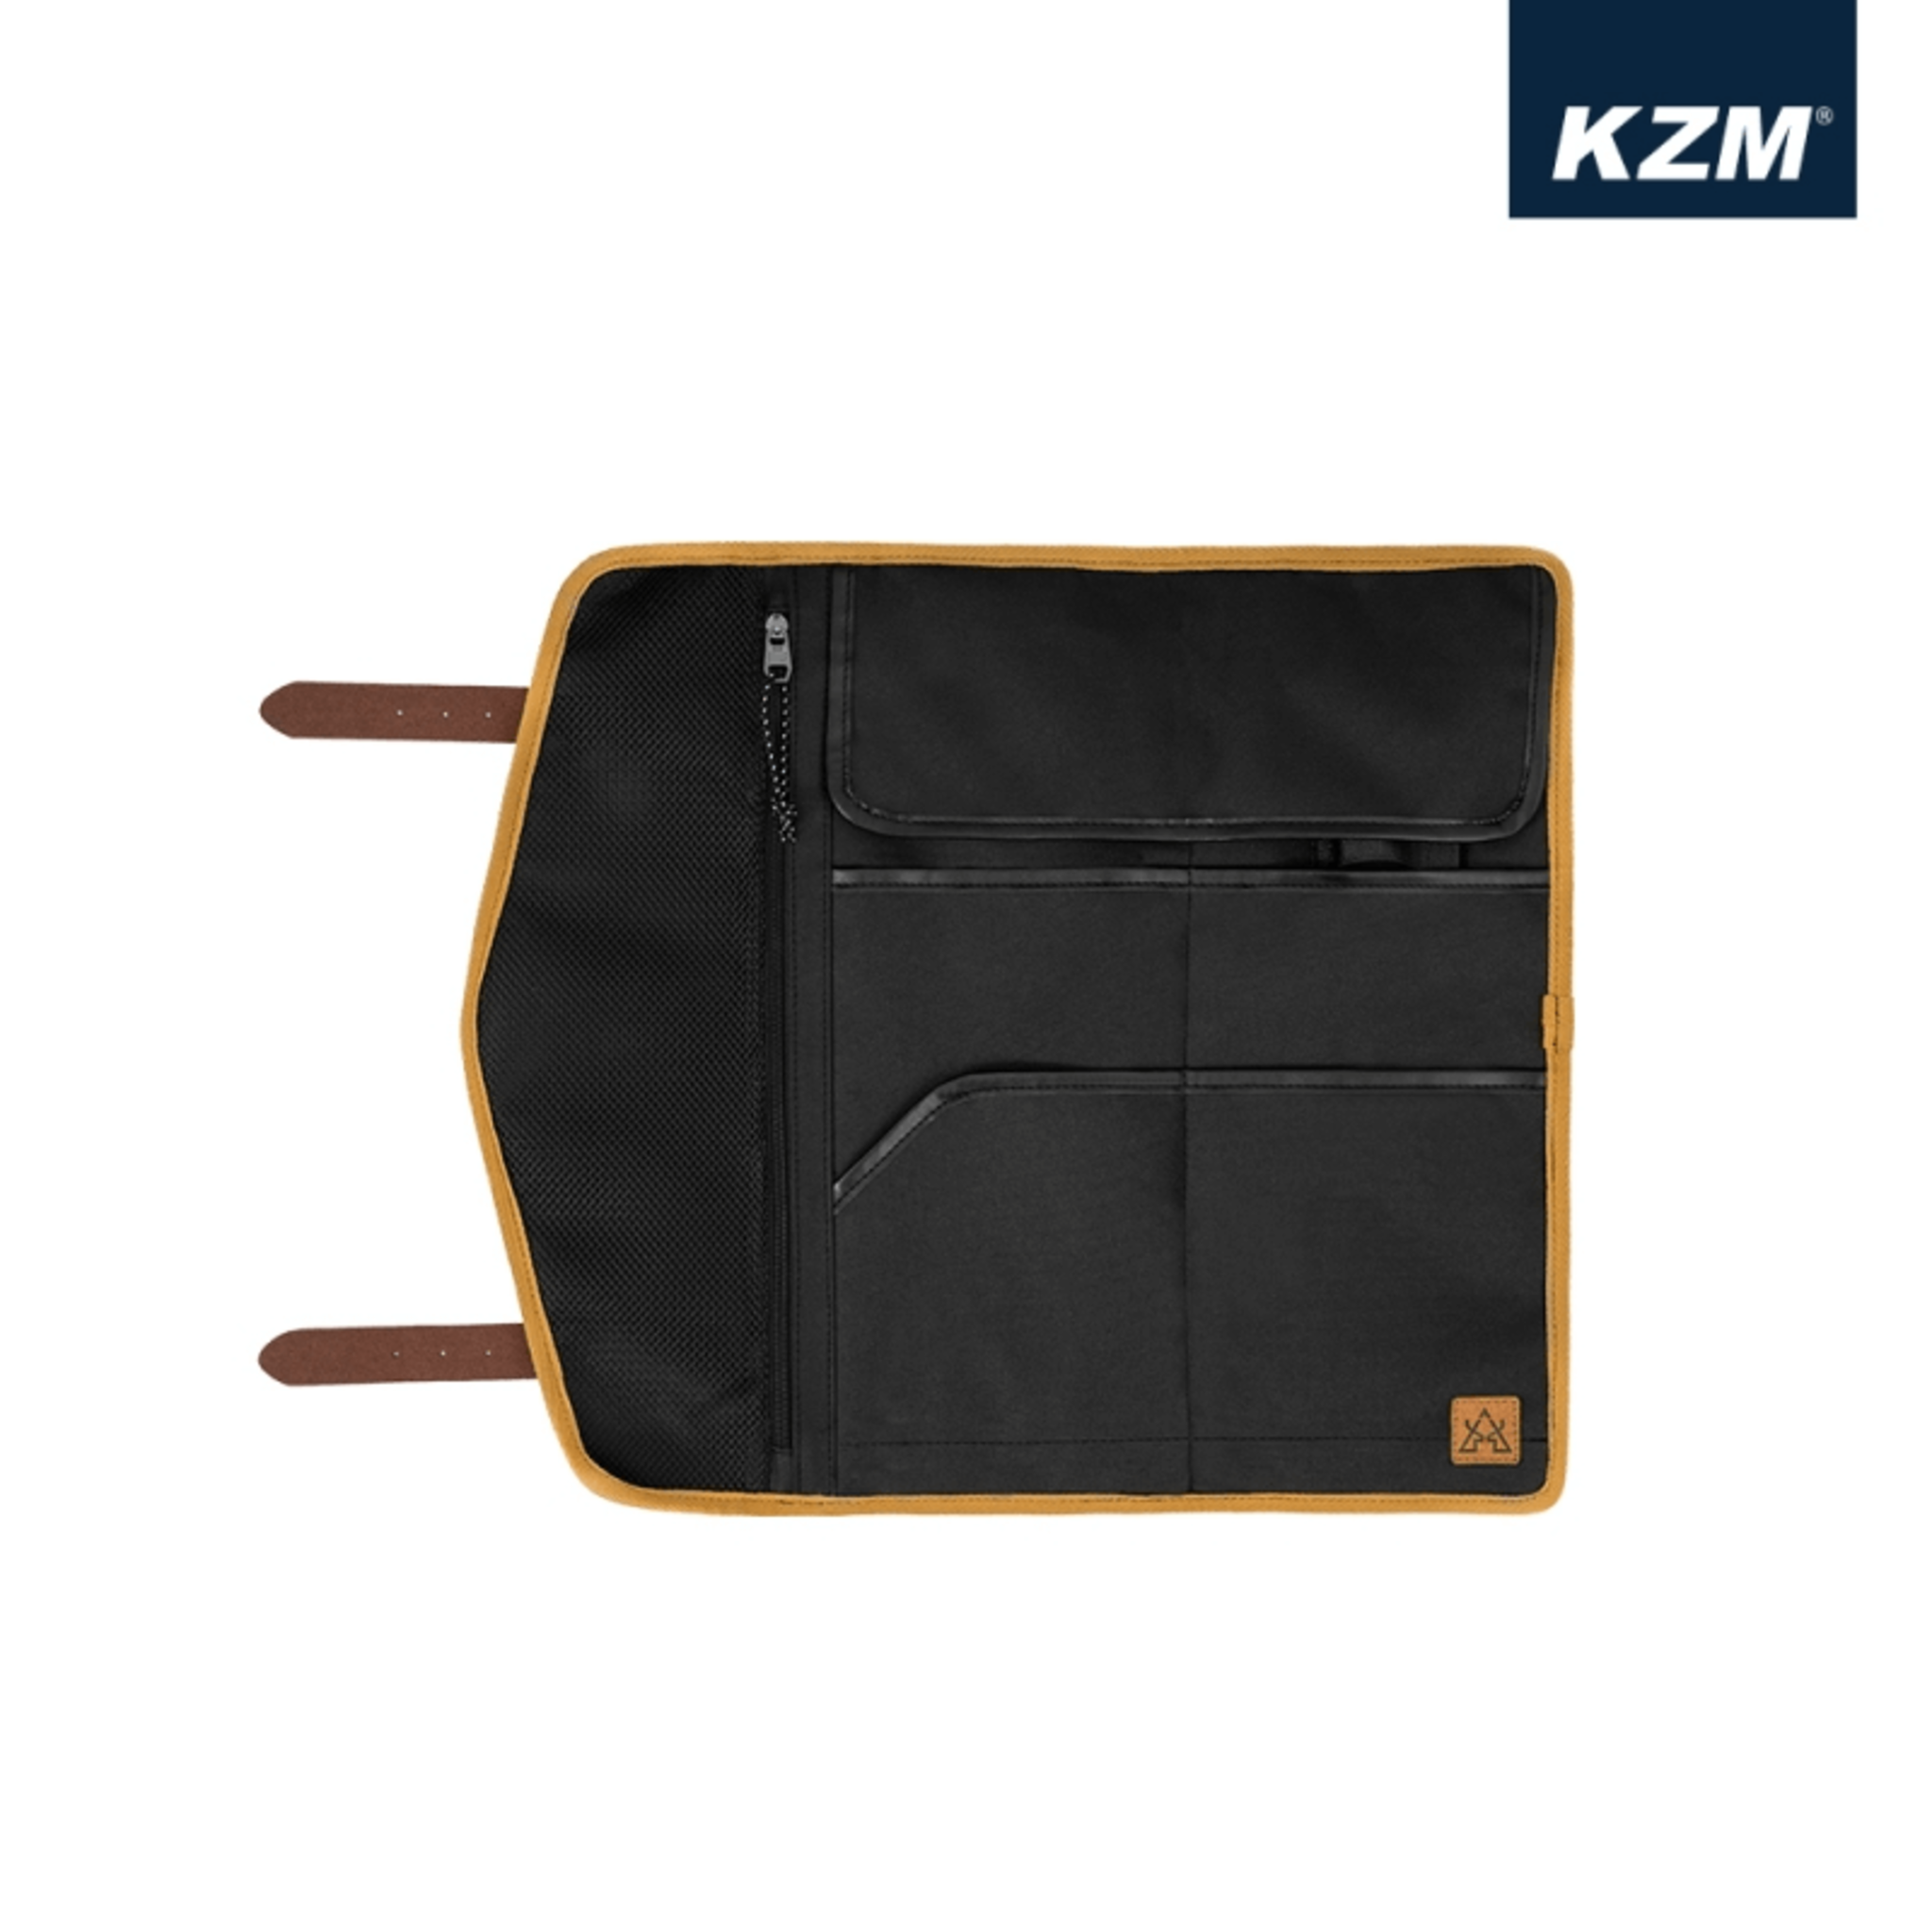 KAZMI KZM 風格工具收納袋 黑 K21T3B06